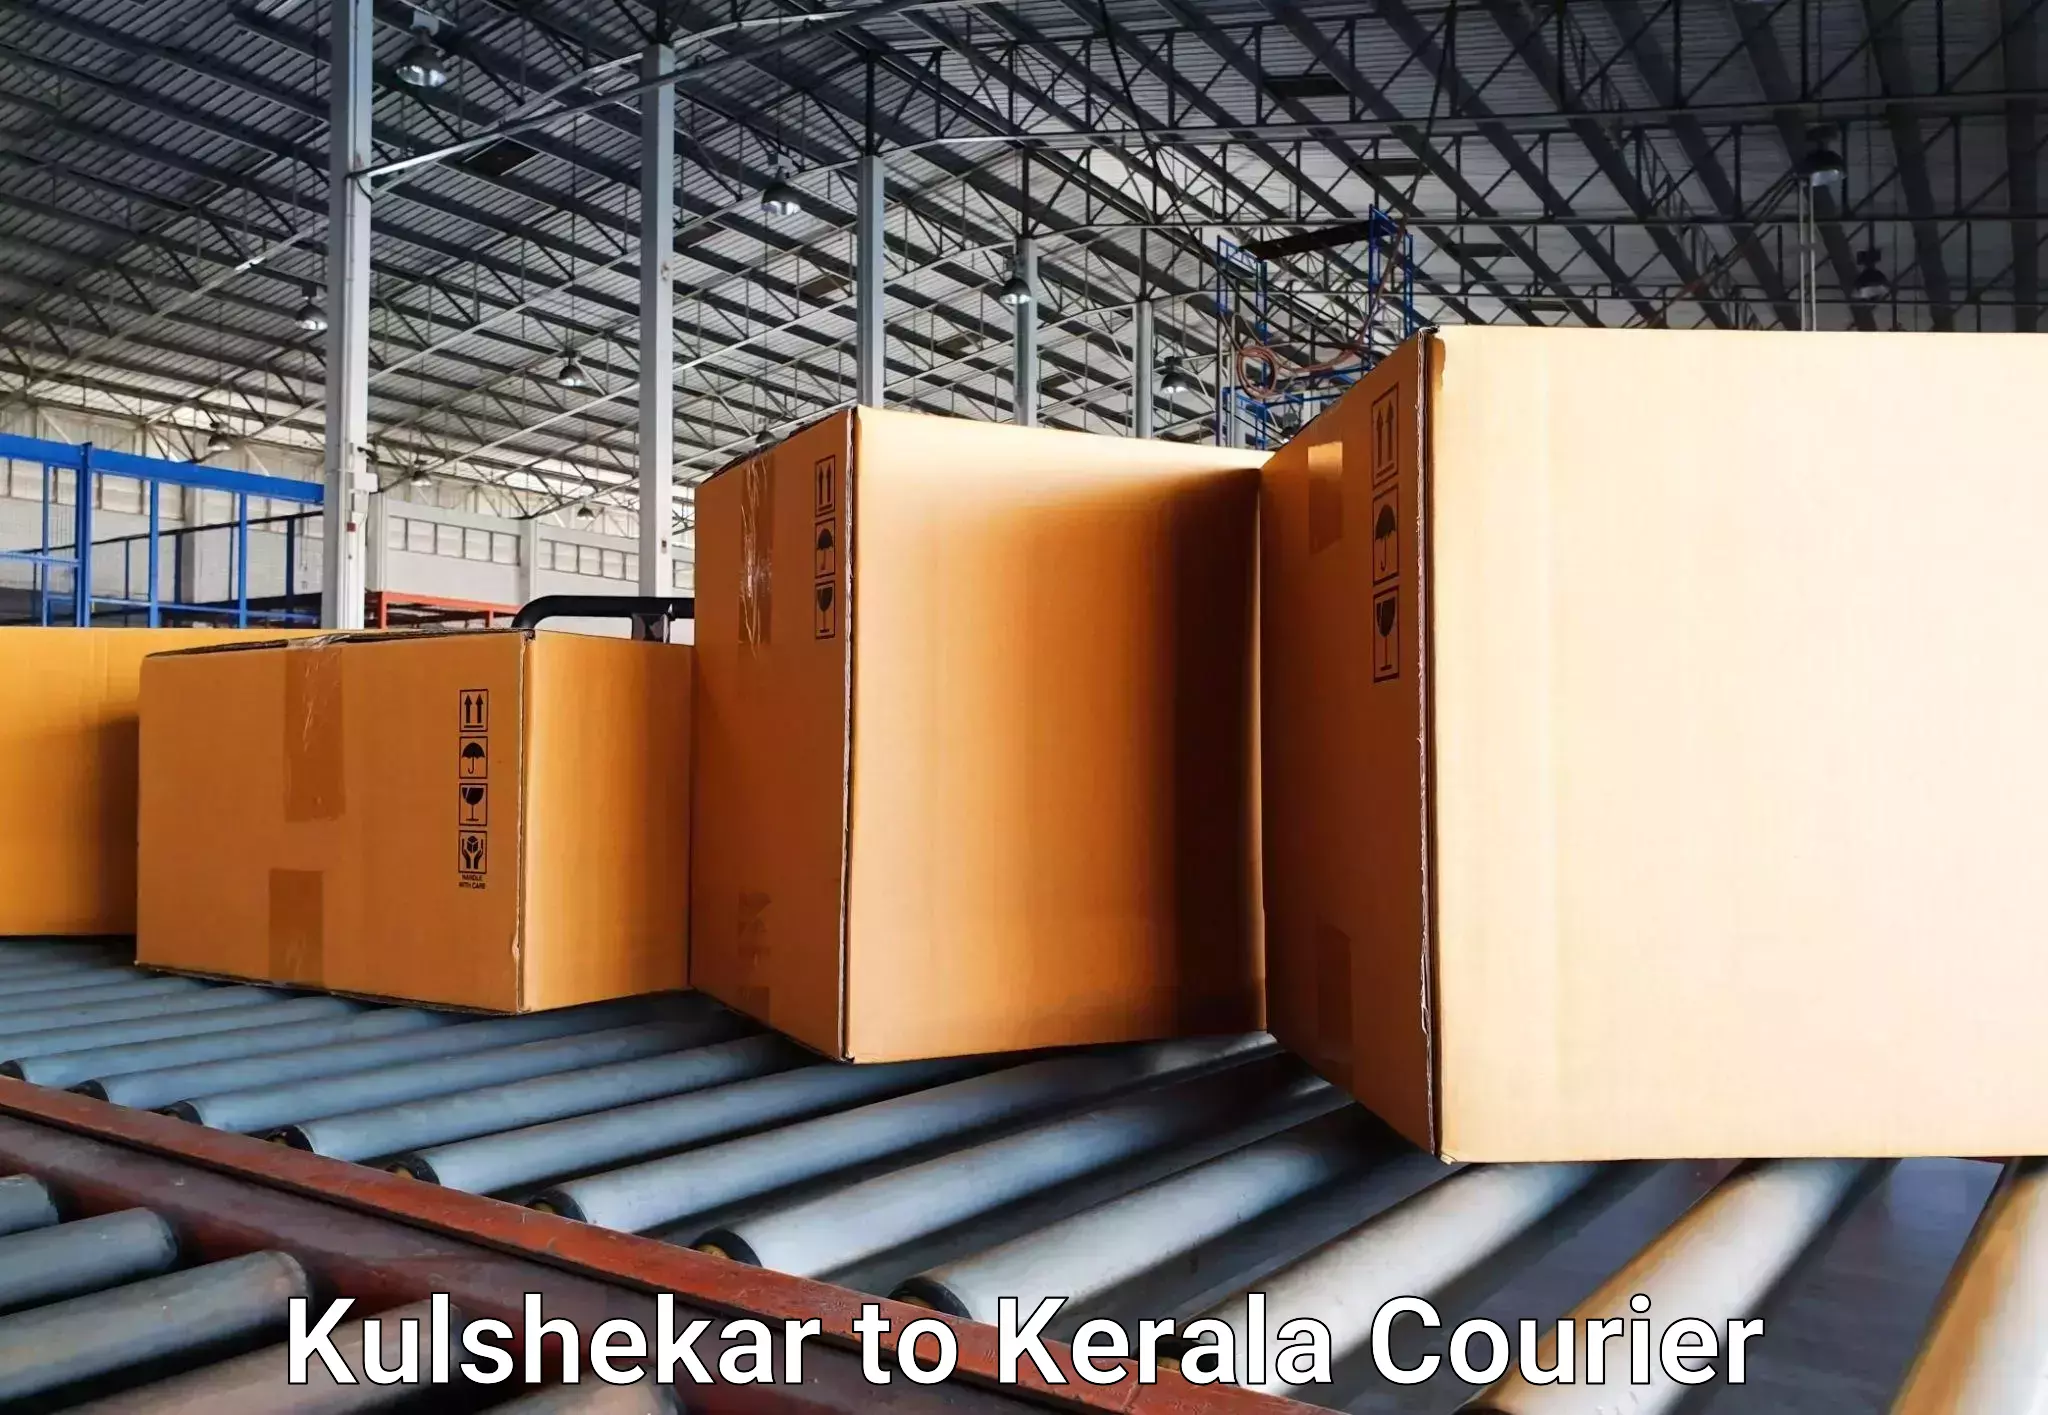 Baggage delivery estimate Kulshekar to Chervathur